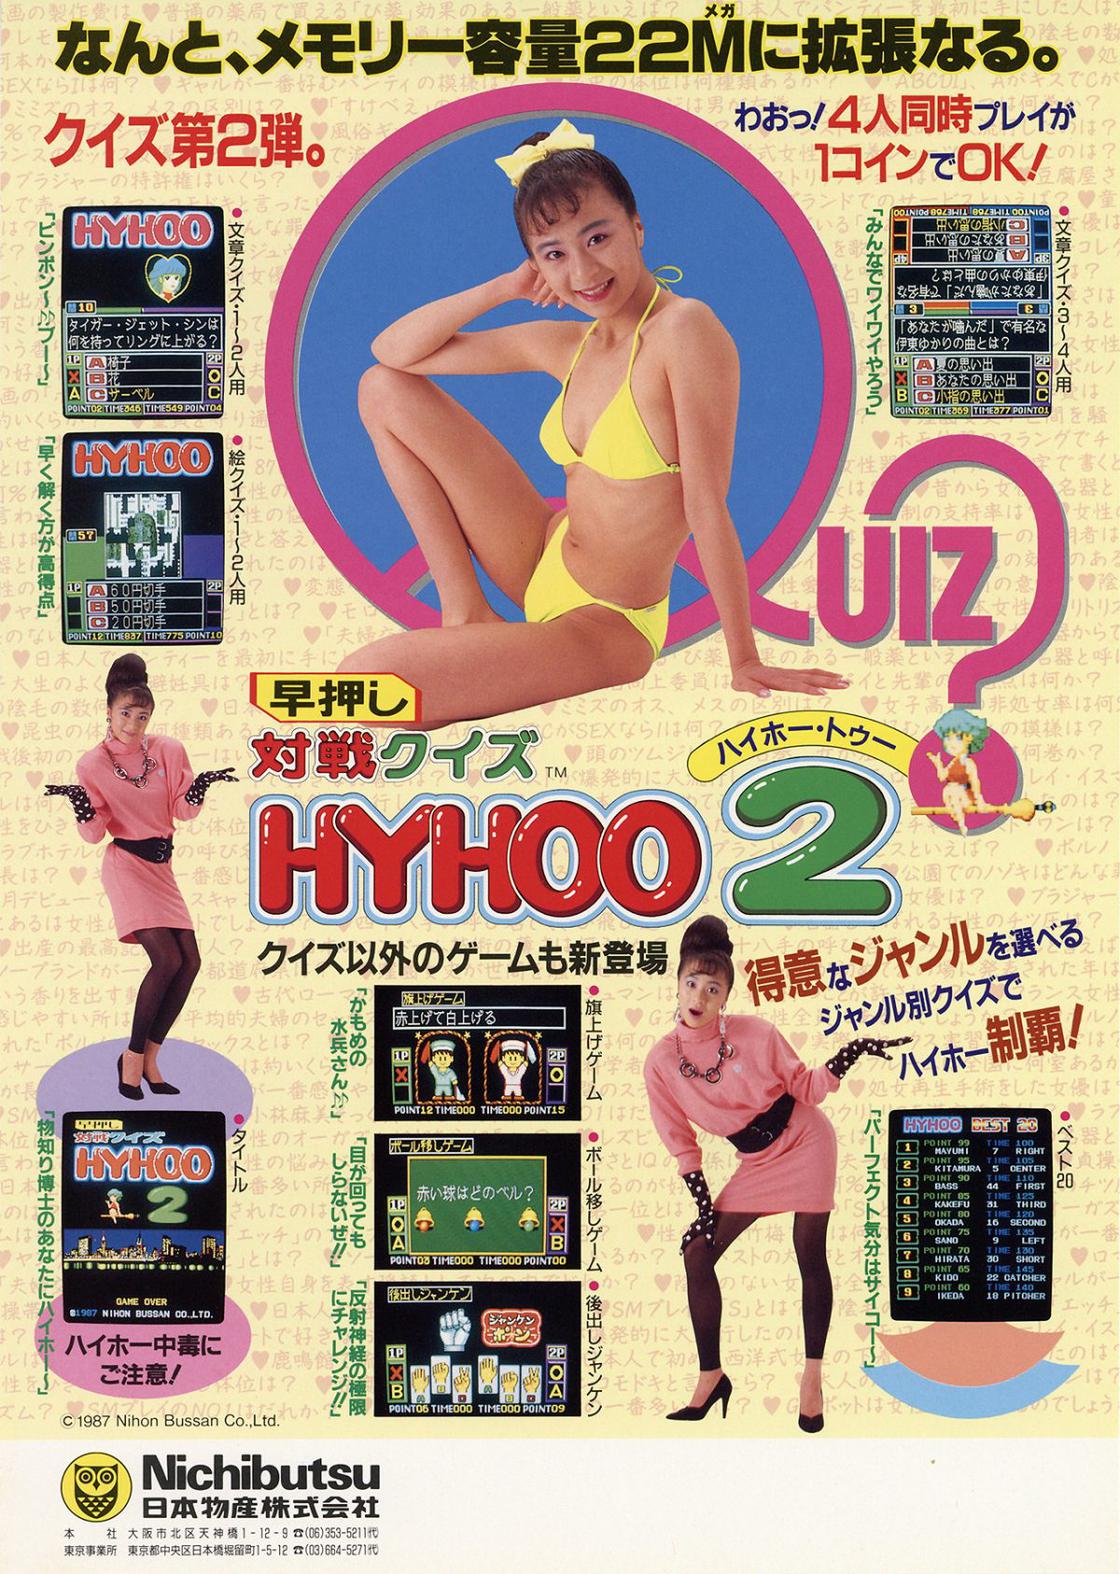 publicites-japonaises-jeux-video-1980-8.jpg